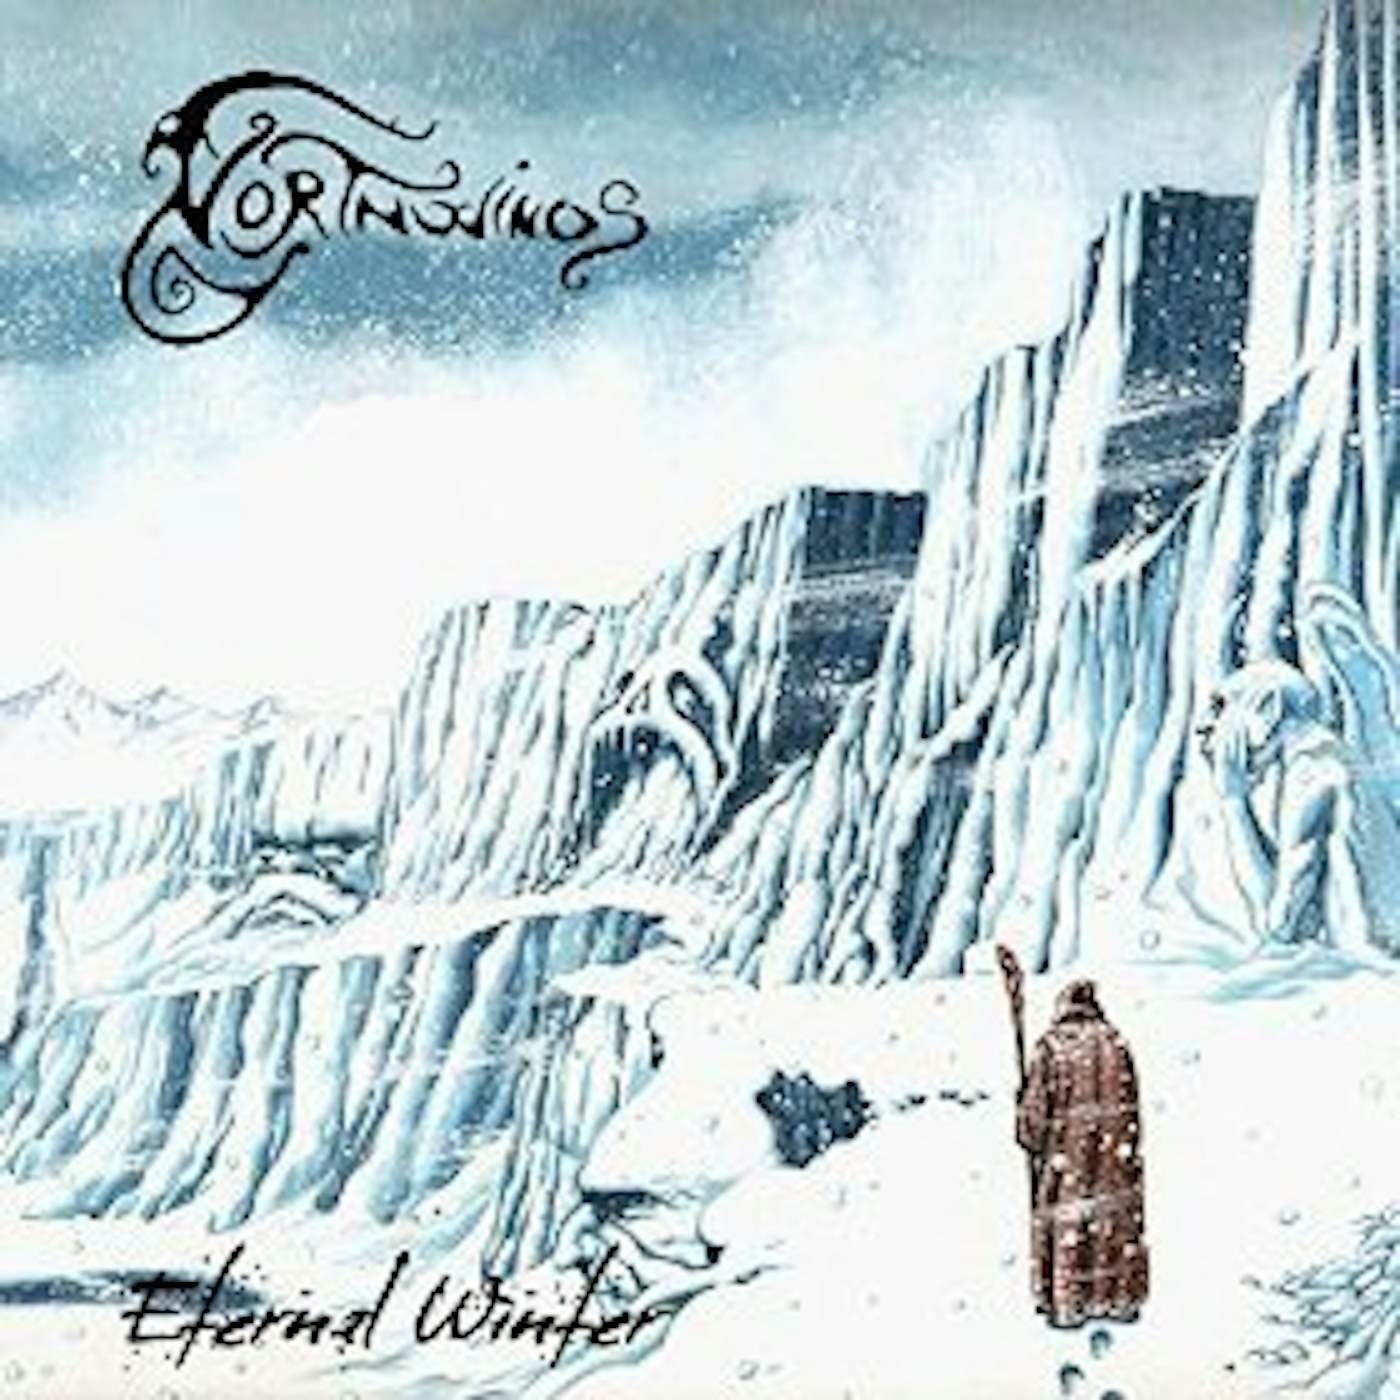 Northwinds ETERNAL WINTER CD